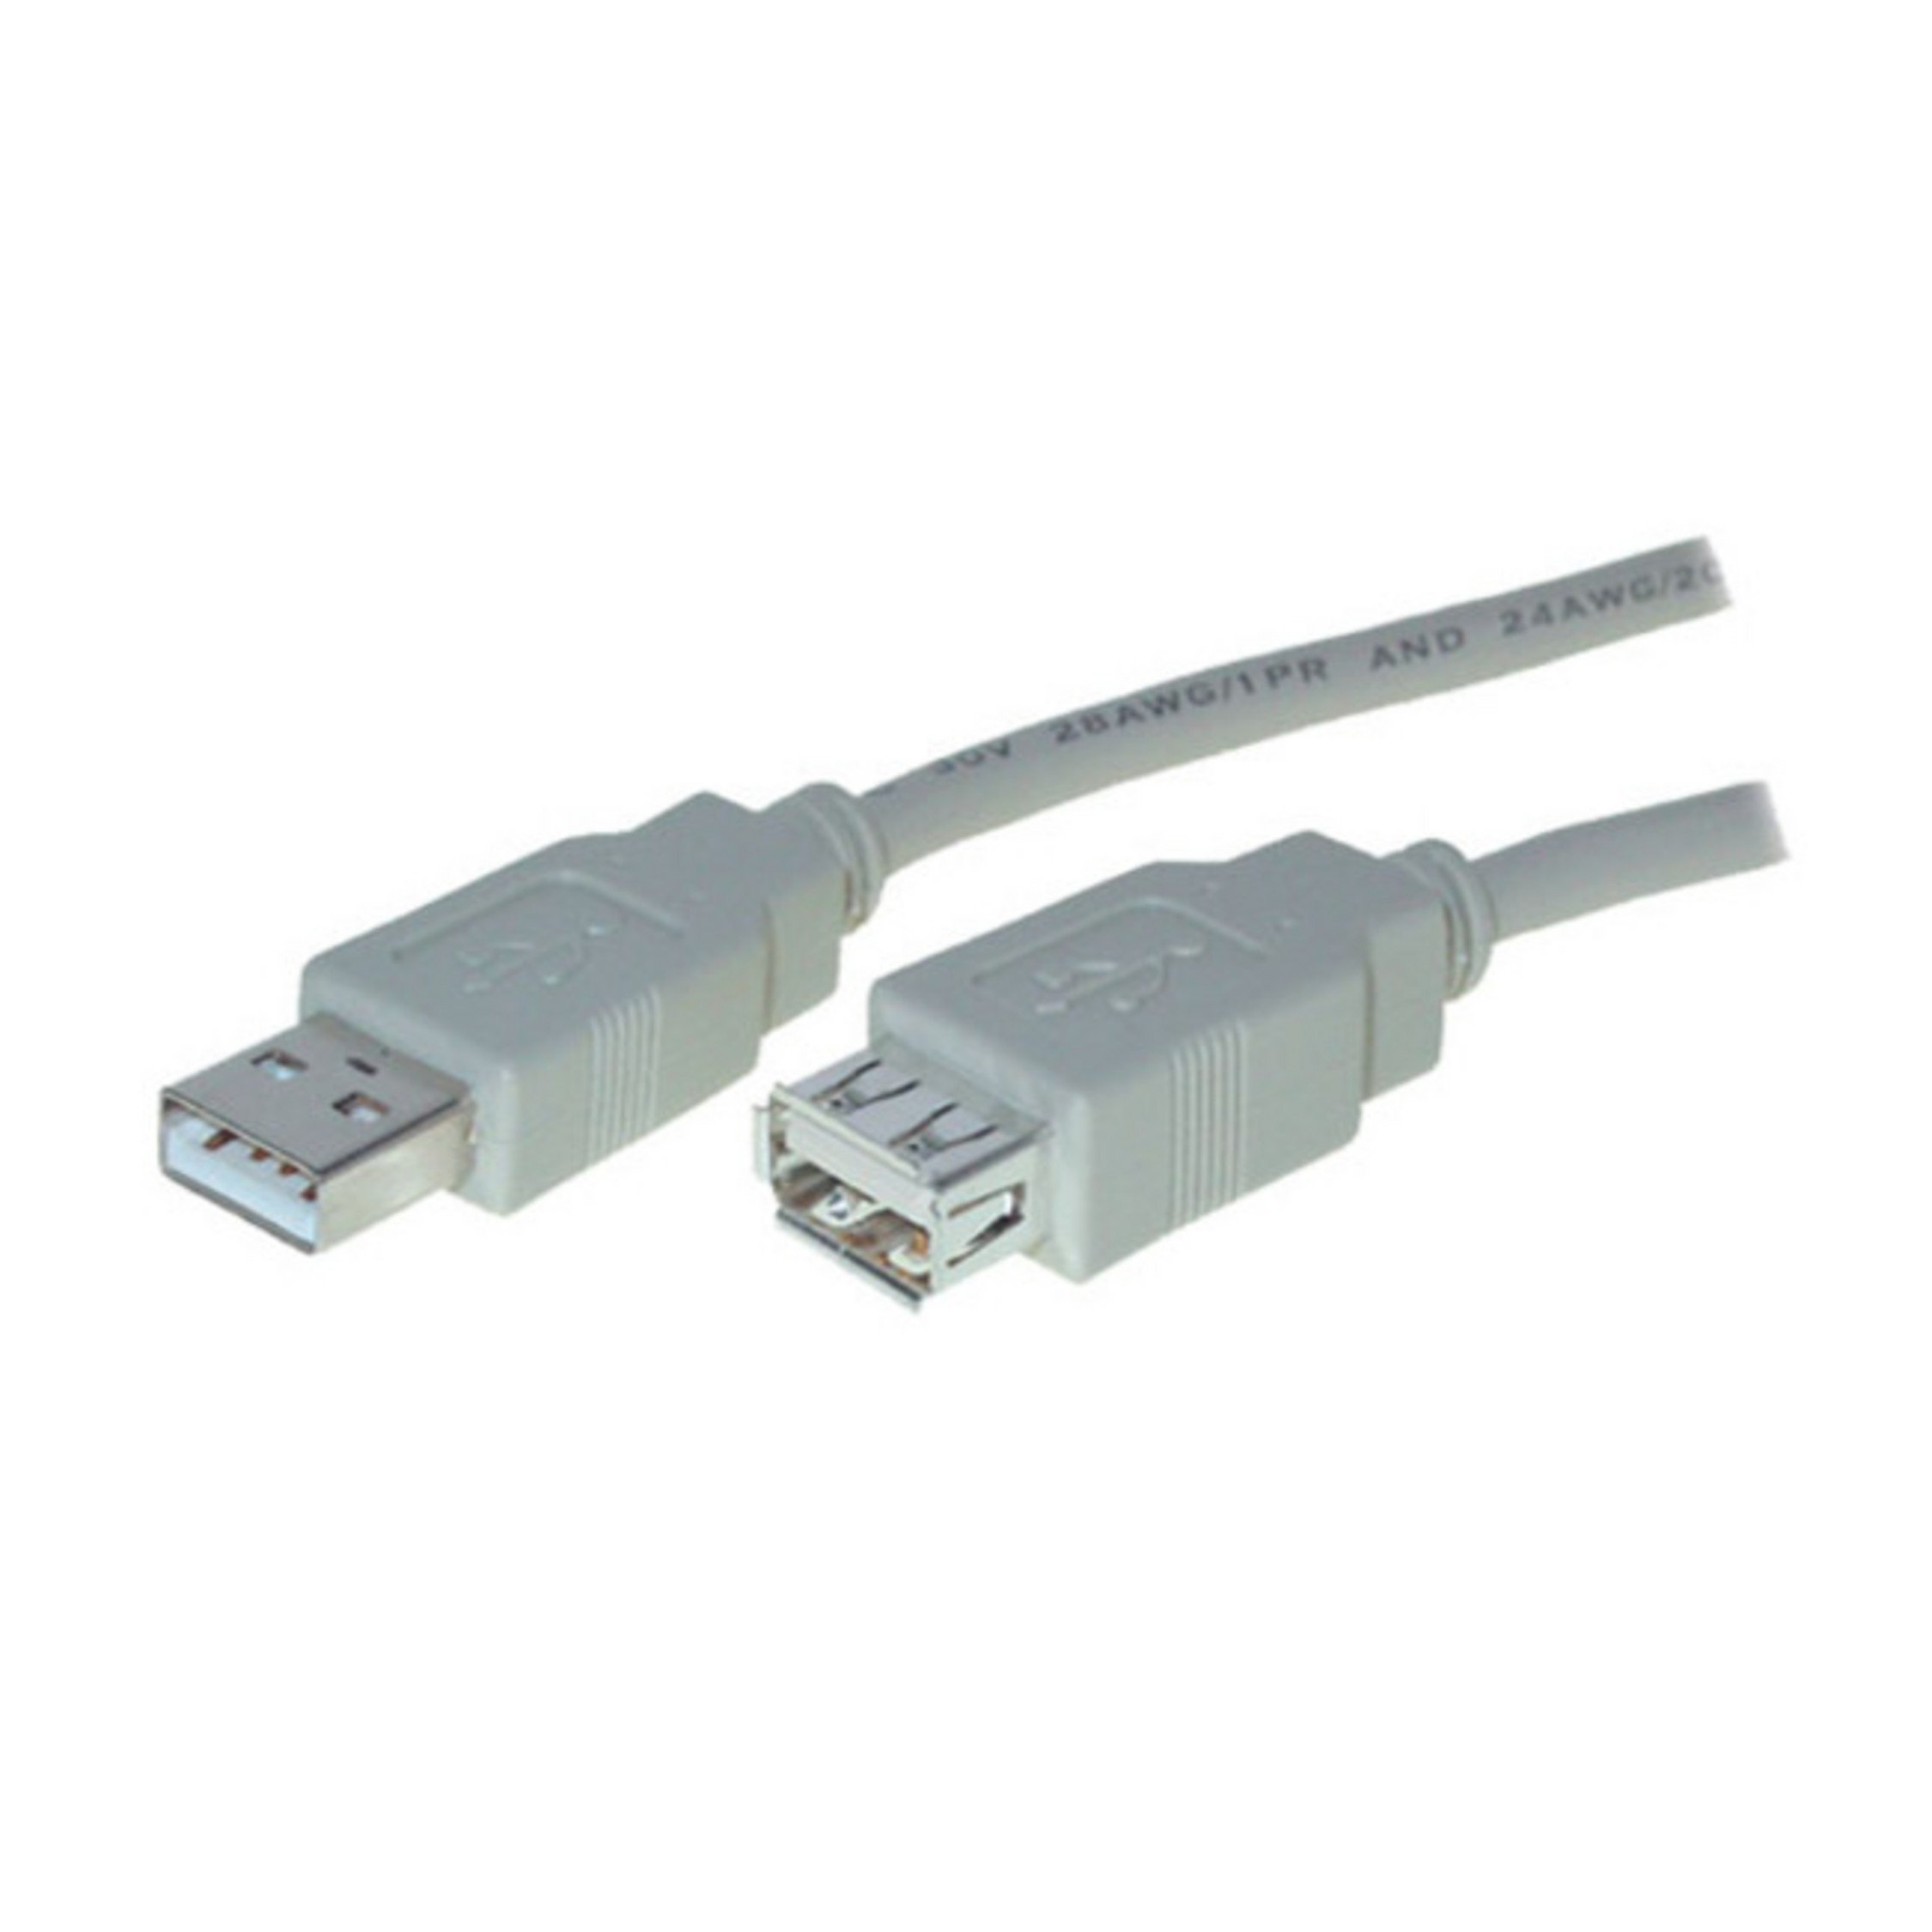 S/CONN MAXIMUM CONNECTIVITY USB Kabel Buchse A A / 3m USB Verlängerung USB Speed High Stecker 2.0